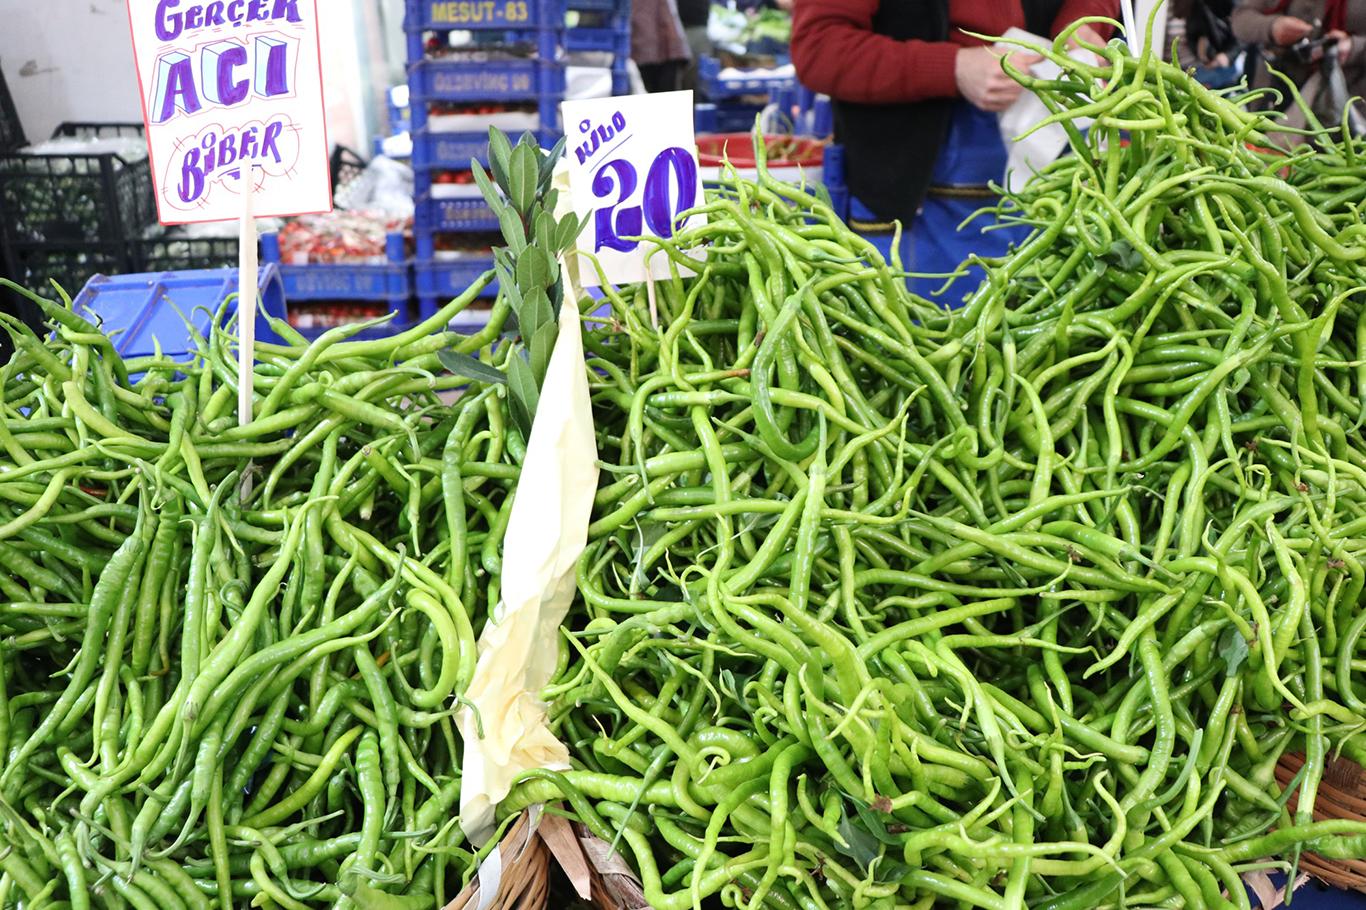 Sebze-Meyve fiyatlarındaki artışlara tepkiler büyüyor